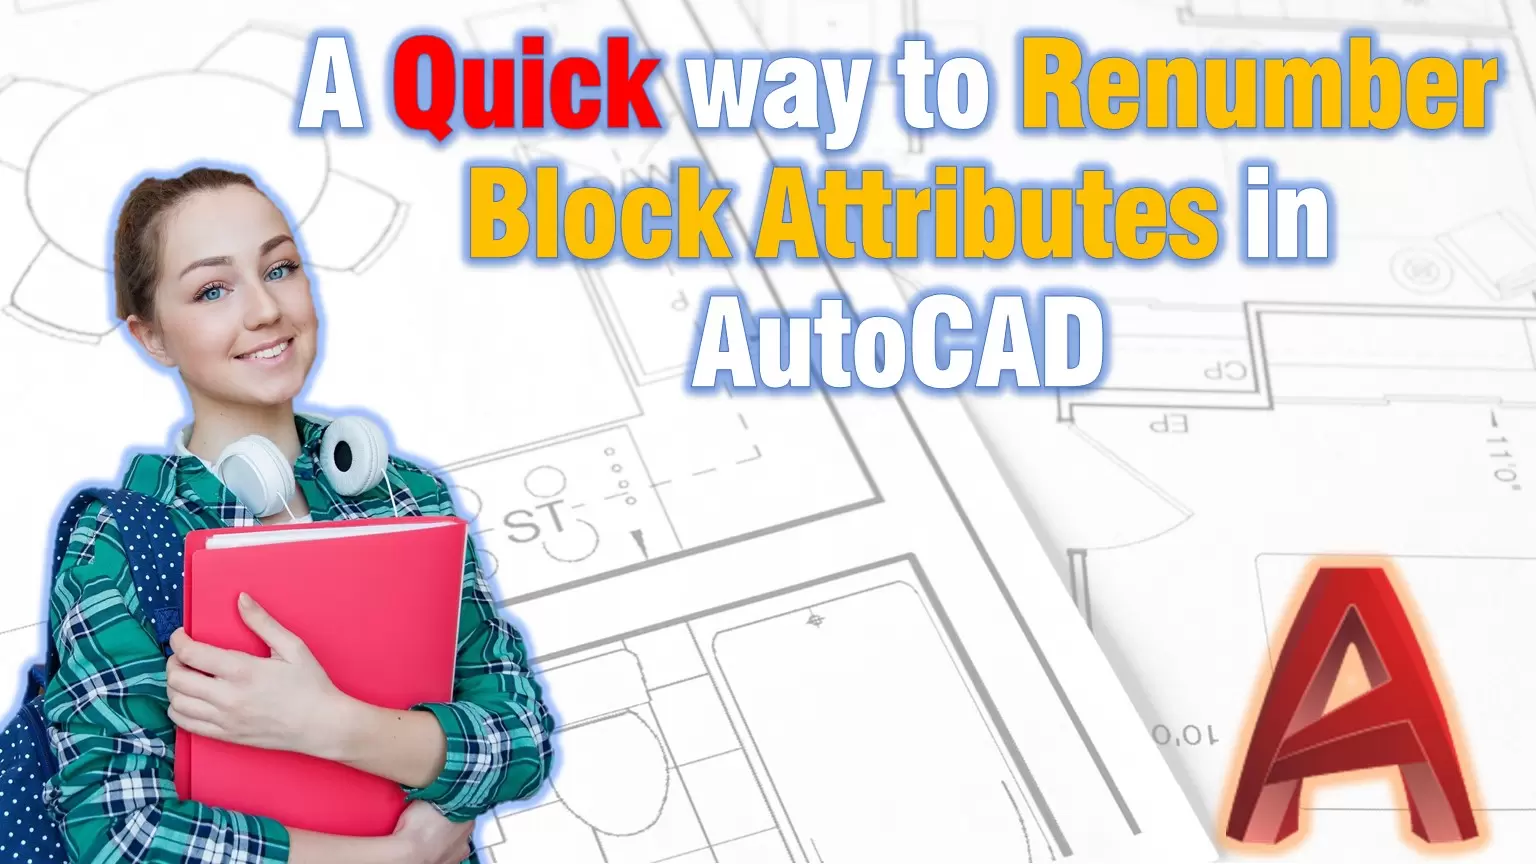 renumber block attributes in autocad